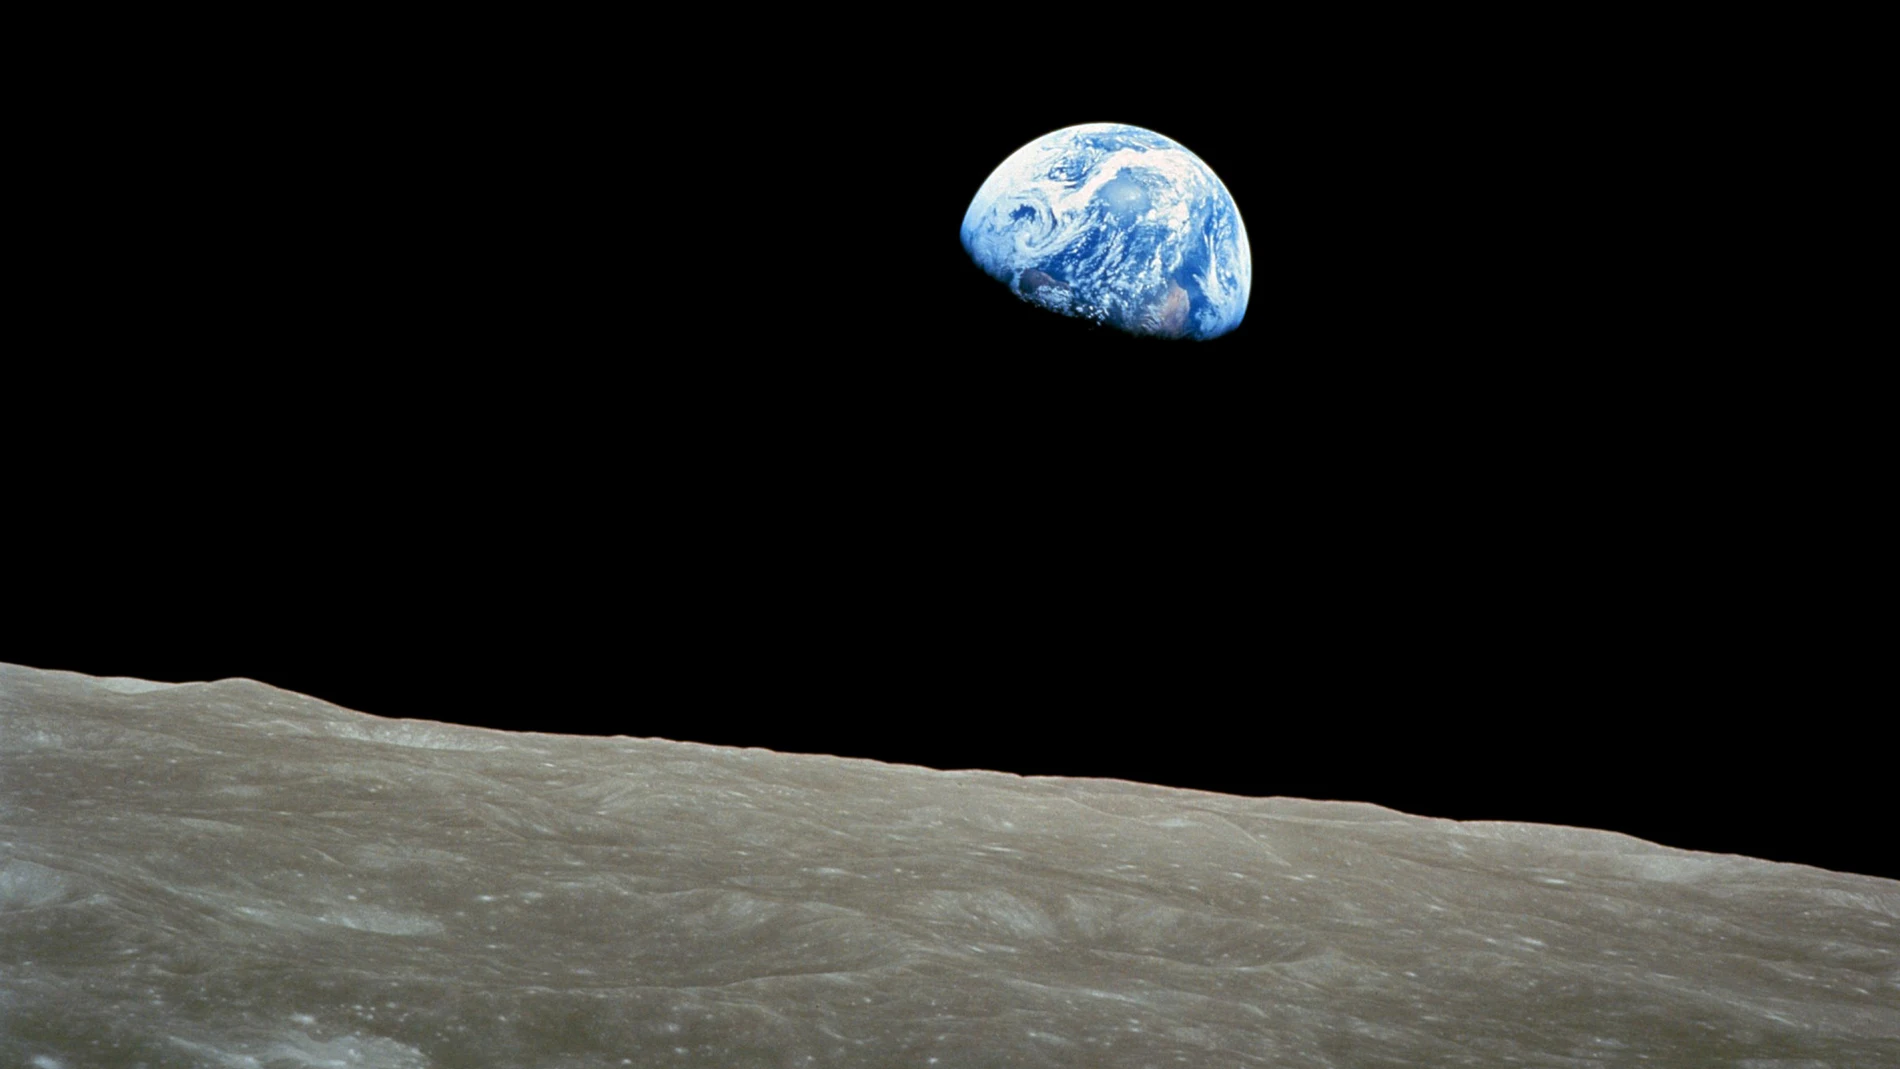 Fotografía de la Tierra saliendo por detrás de la Luna tomada en la misión Apolo 8